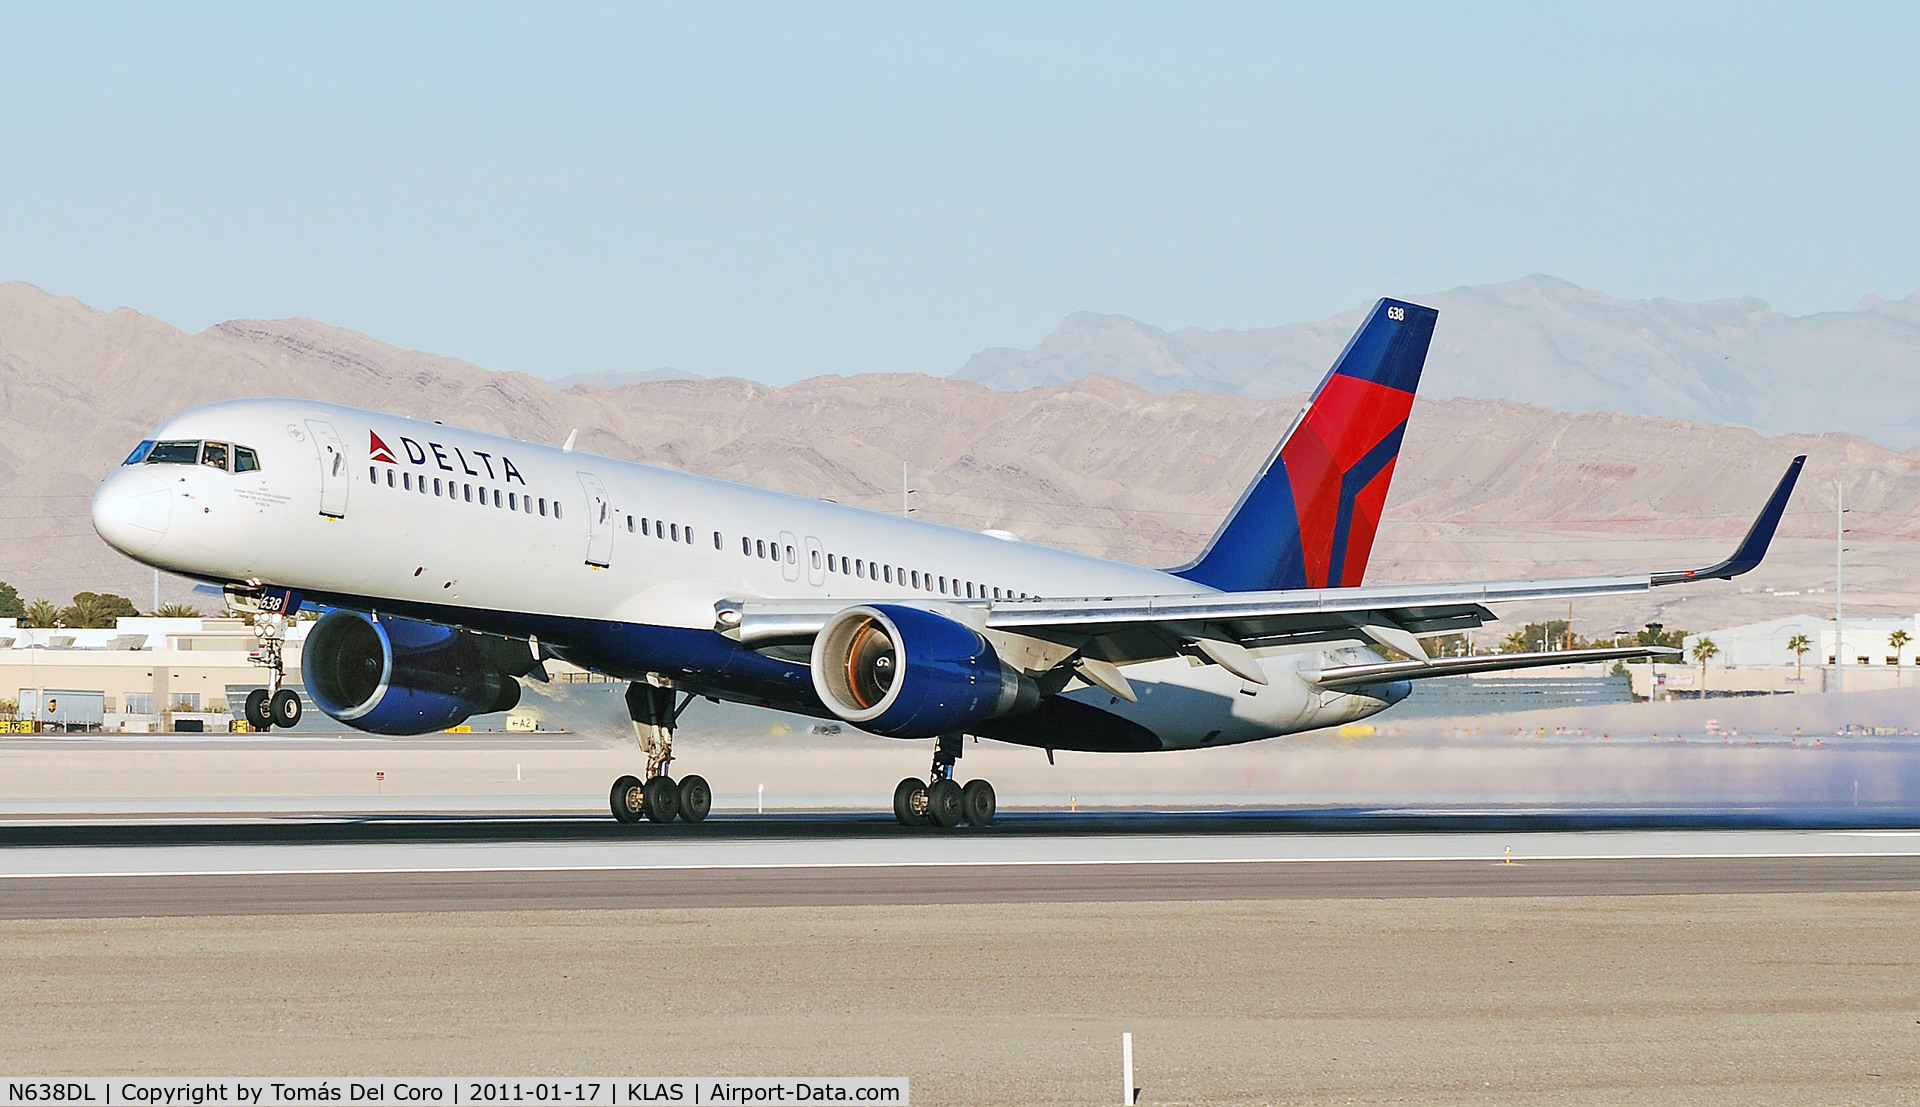 N638DL, 1988 Boeing 757-232 C/N 23761, Delta Air Lines Boeing 757-232 N638DL / 638 (cn 23761/177)

Las Vegas - McCarran International (LAS / KLAS)
USA - Nevada, January 17, 2011
Photo: Tomas Del Coro